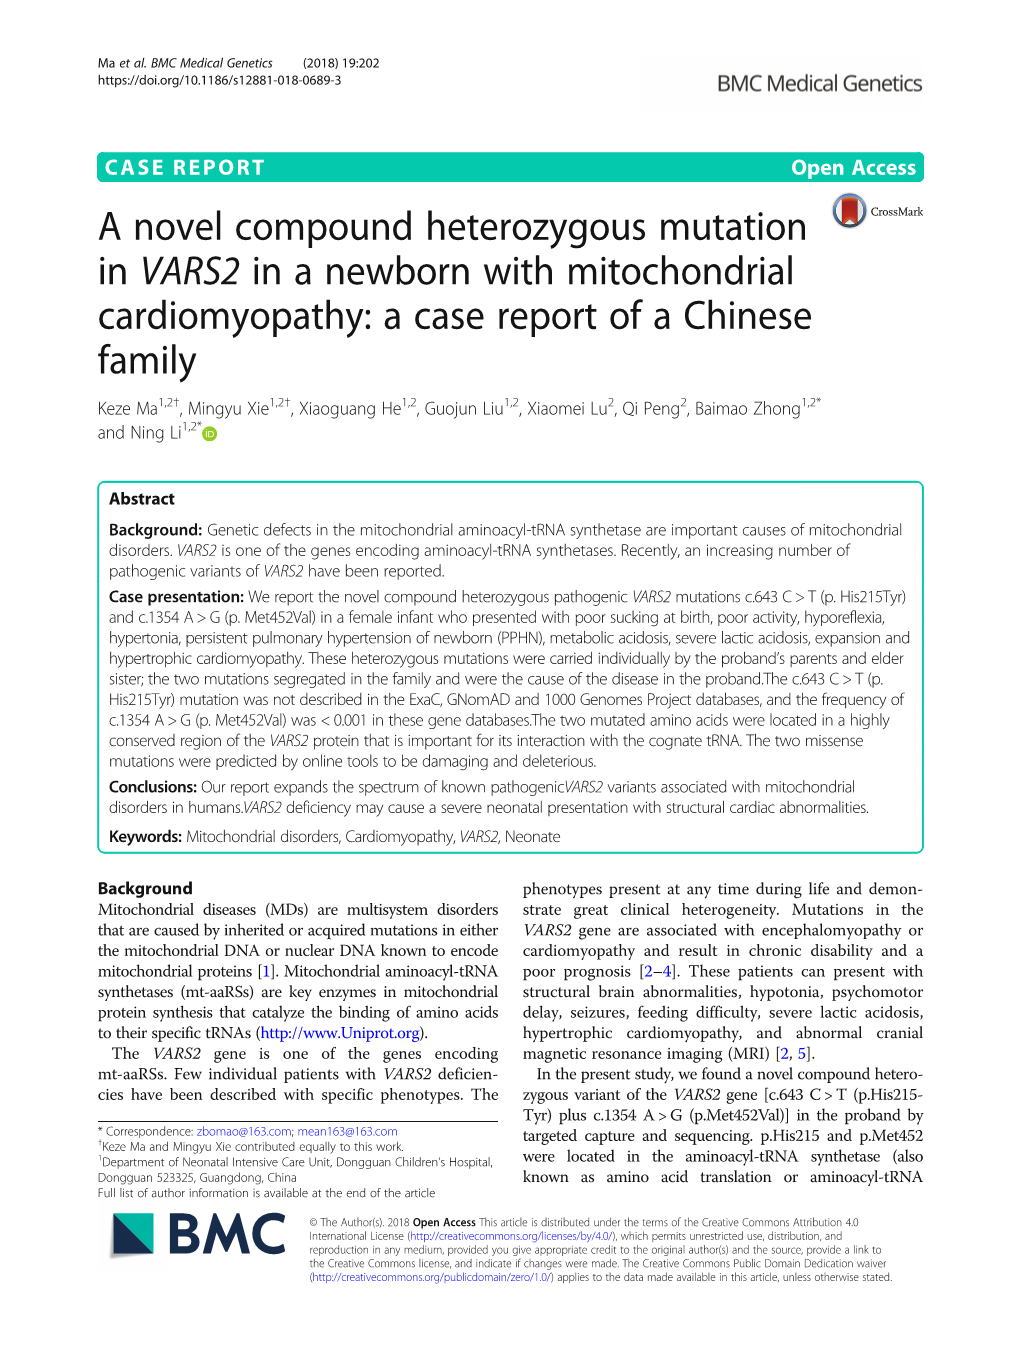 A Novel Compound Heterozygous Mutation in VARS2 in a Newborn